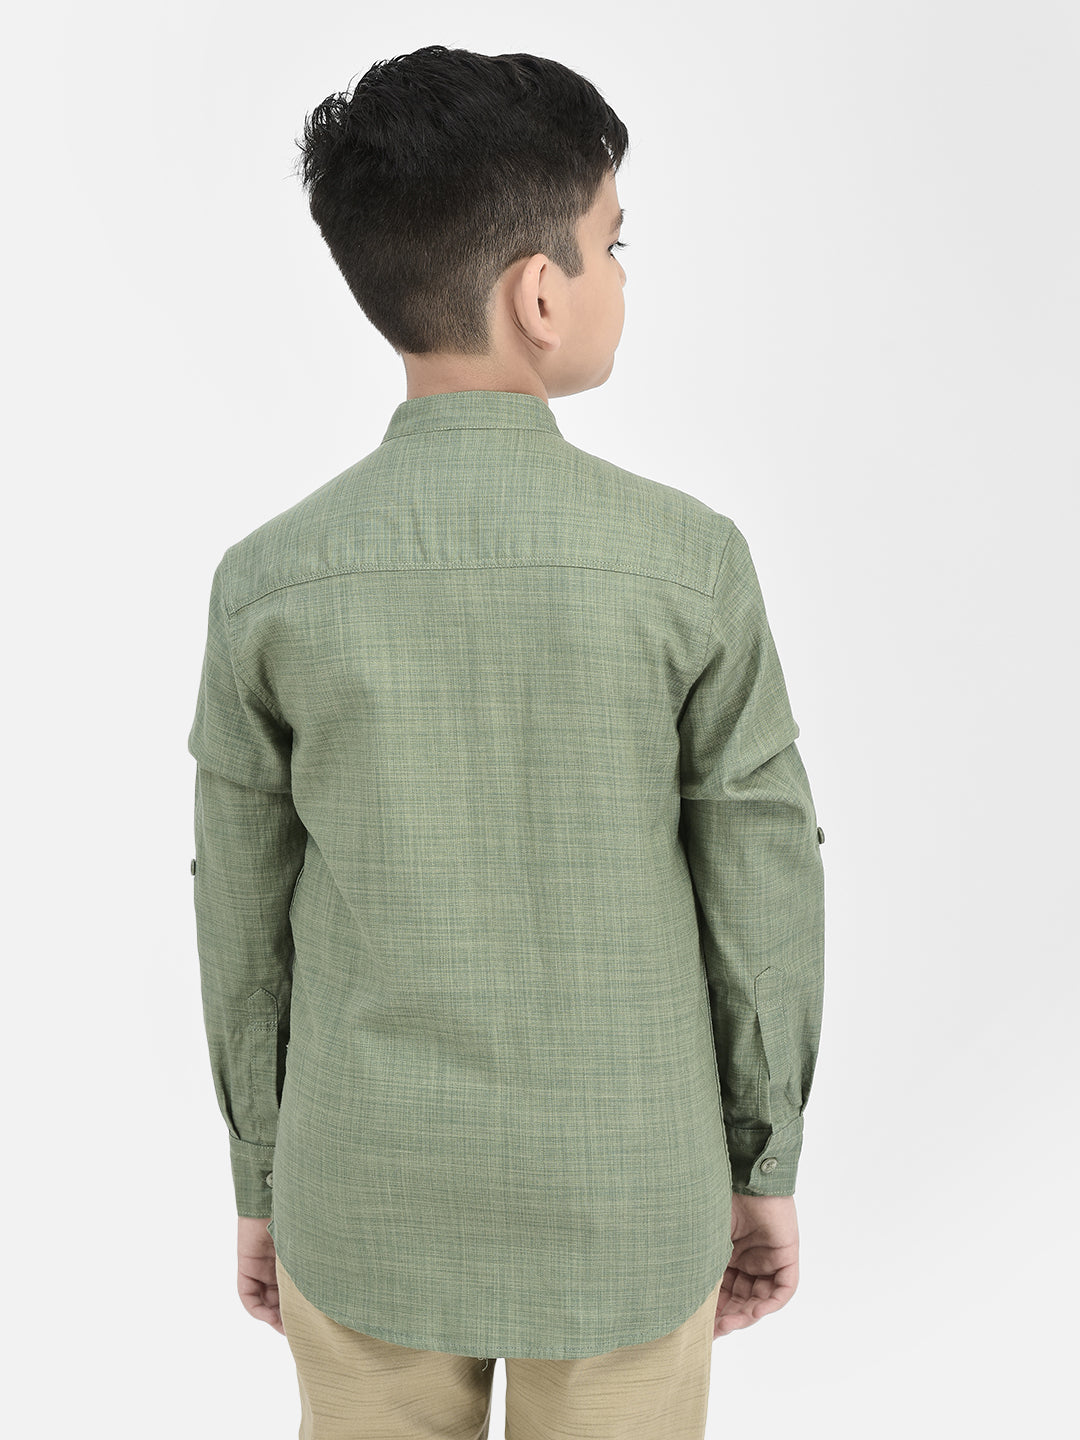 Green Mandarin Neck Shirt